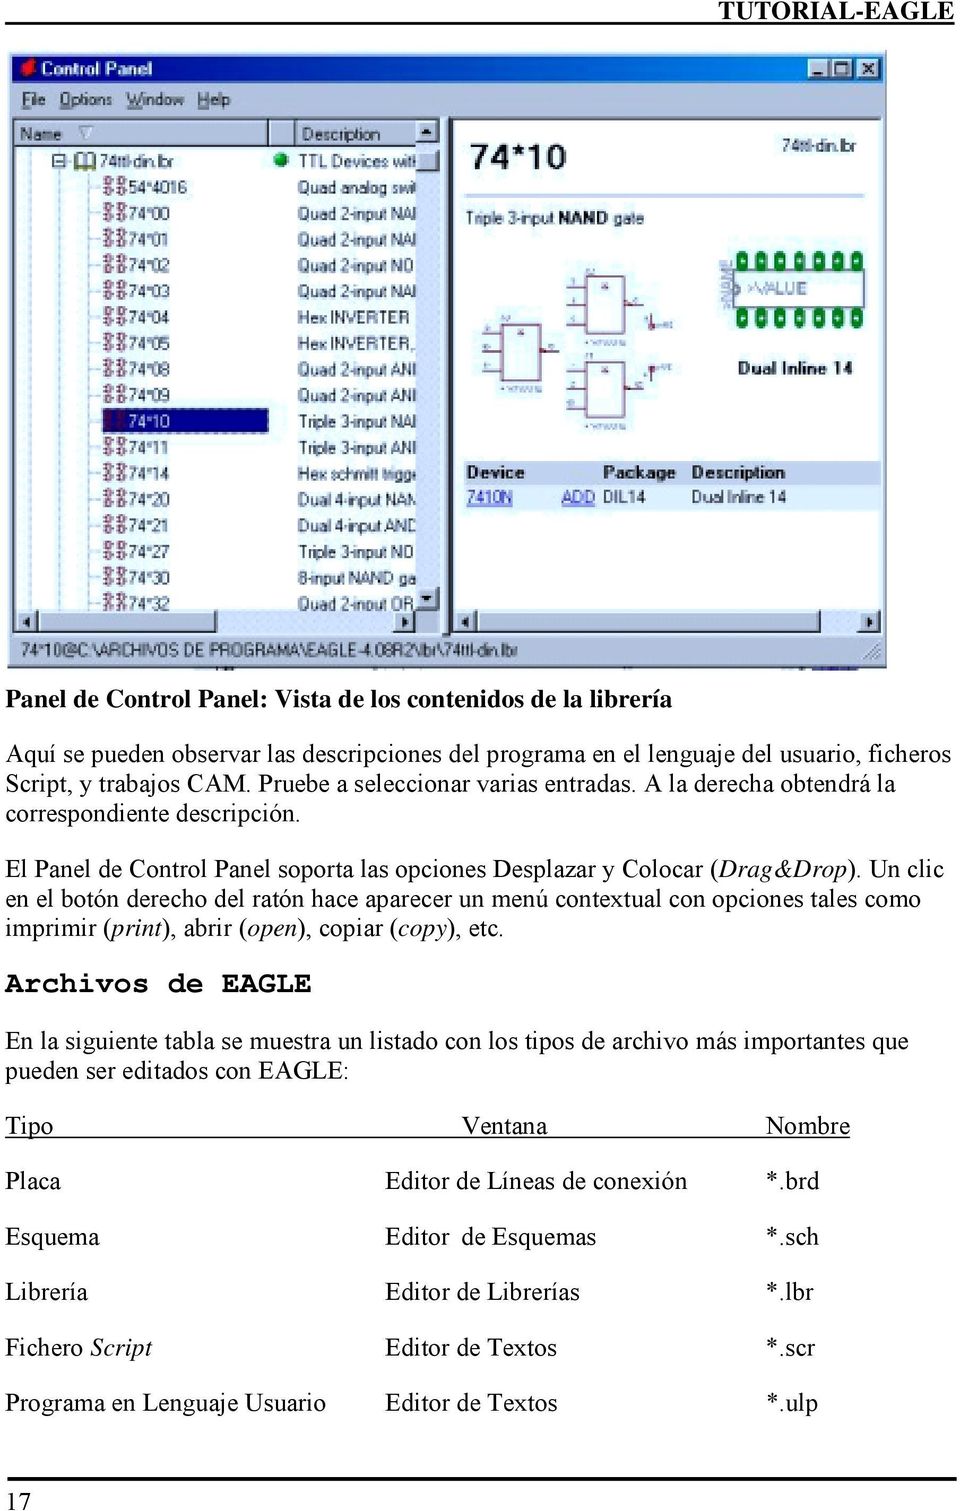 Un clic en el botón derecho del ratón hace aparecer un menú contextual con opciones tales como imprimir (print), abrir (open), copiar (copy), etc.